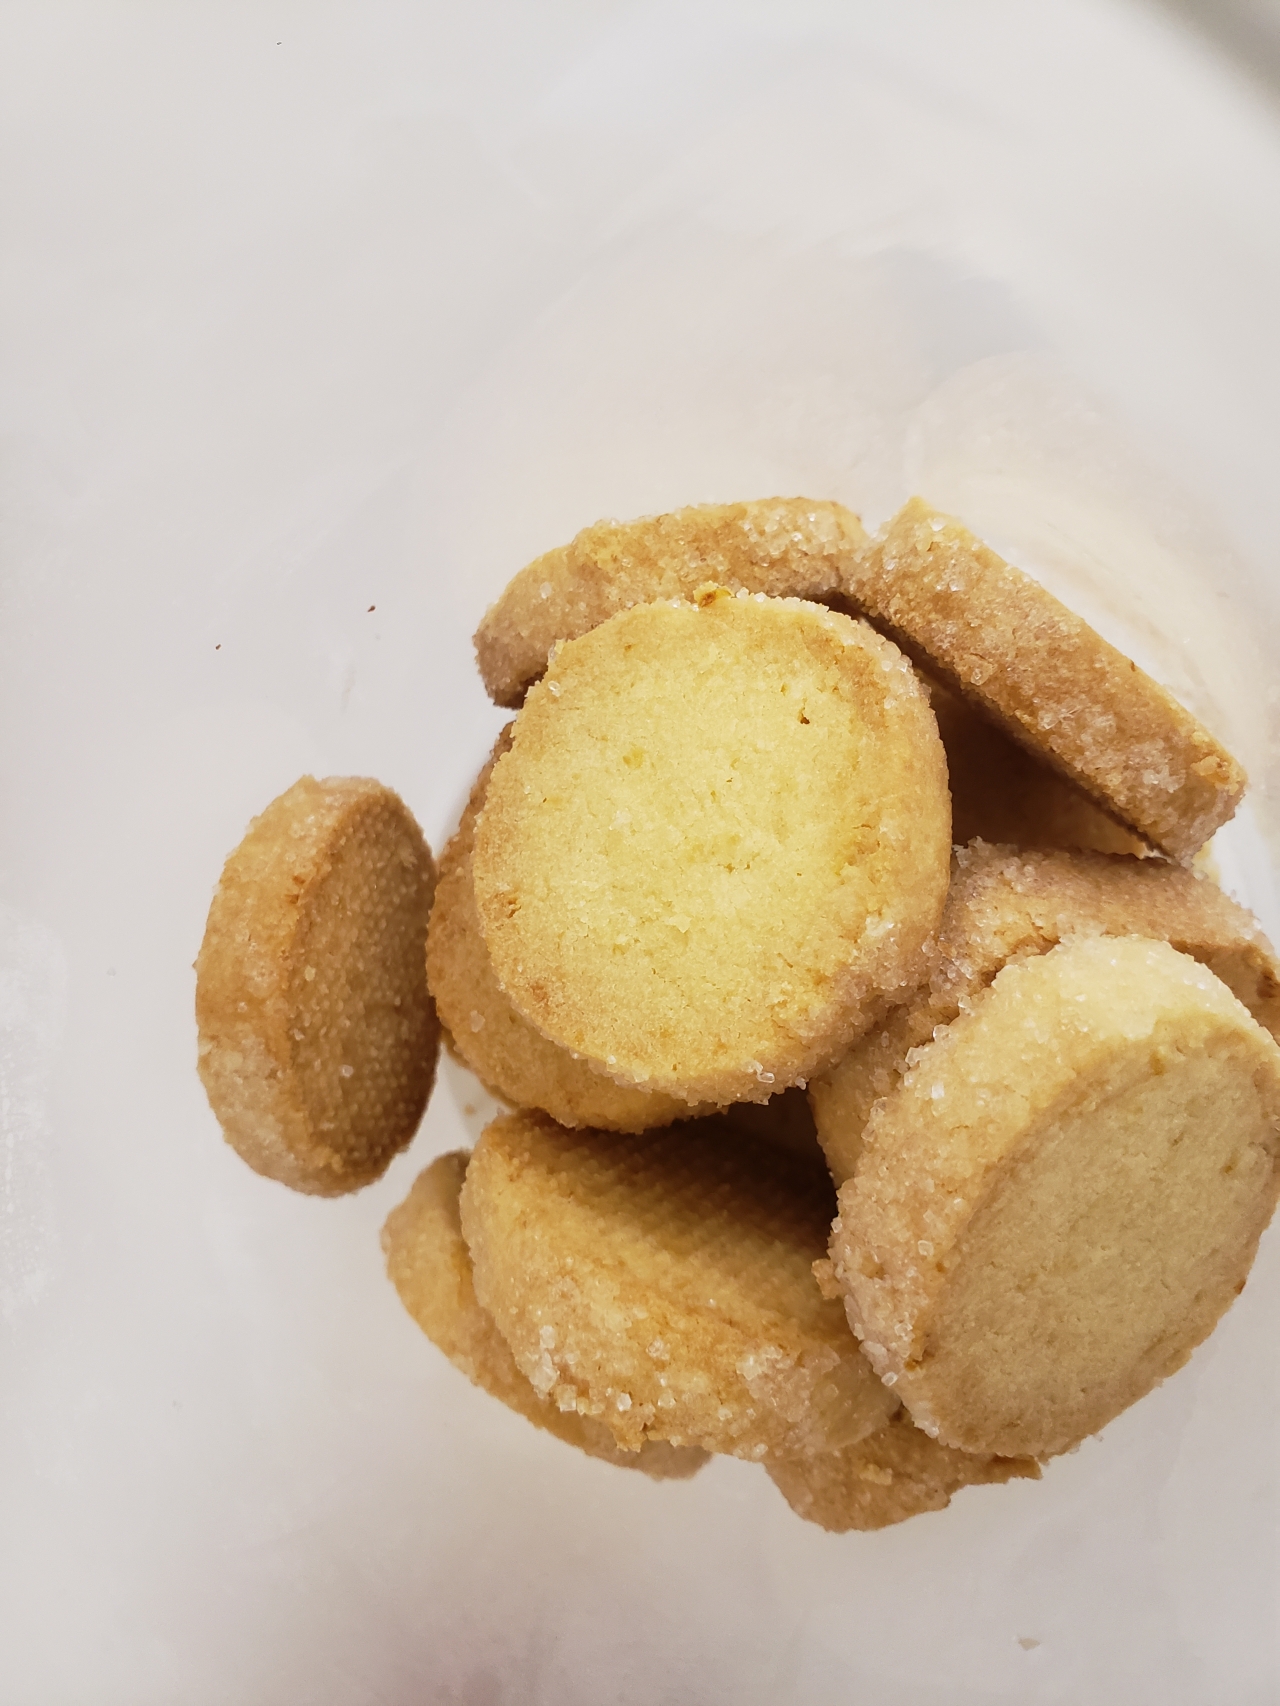 简单易做+好吃的柠檬🍋钻石莎布蕾曲奇饼干